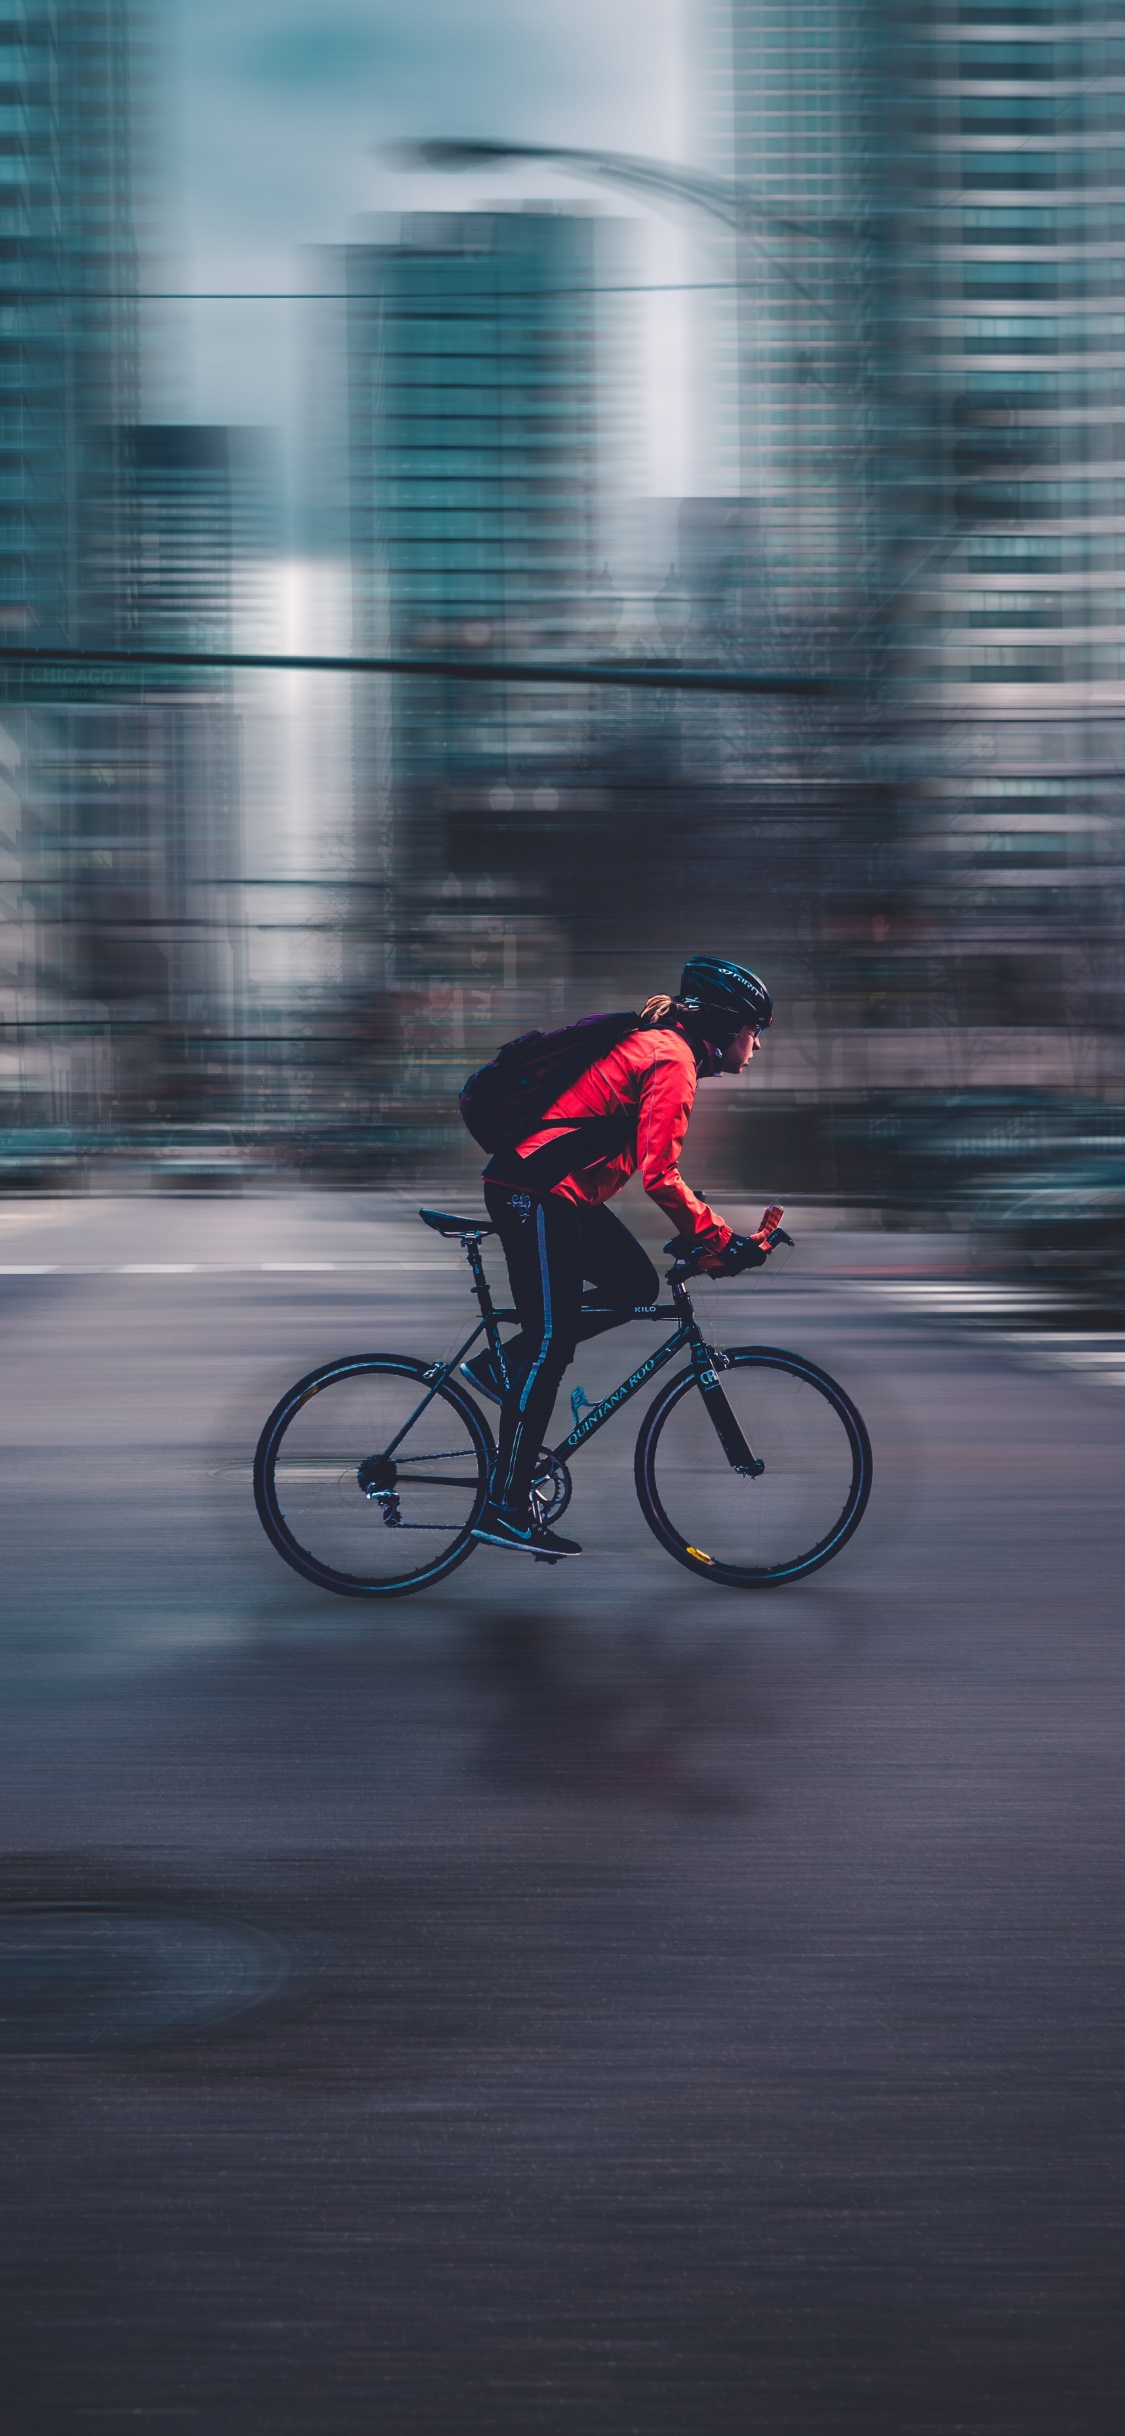 Hombre de Chaqueta Roja Montando Bicicleta en la Carretera Durante el Día. Wallpaper in 1125x2436 Resolution